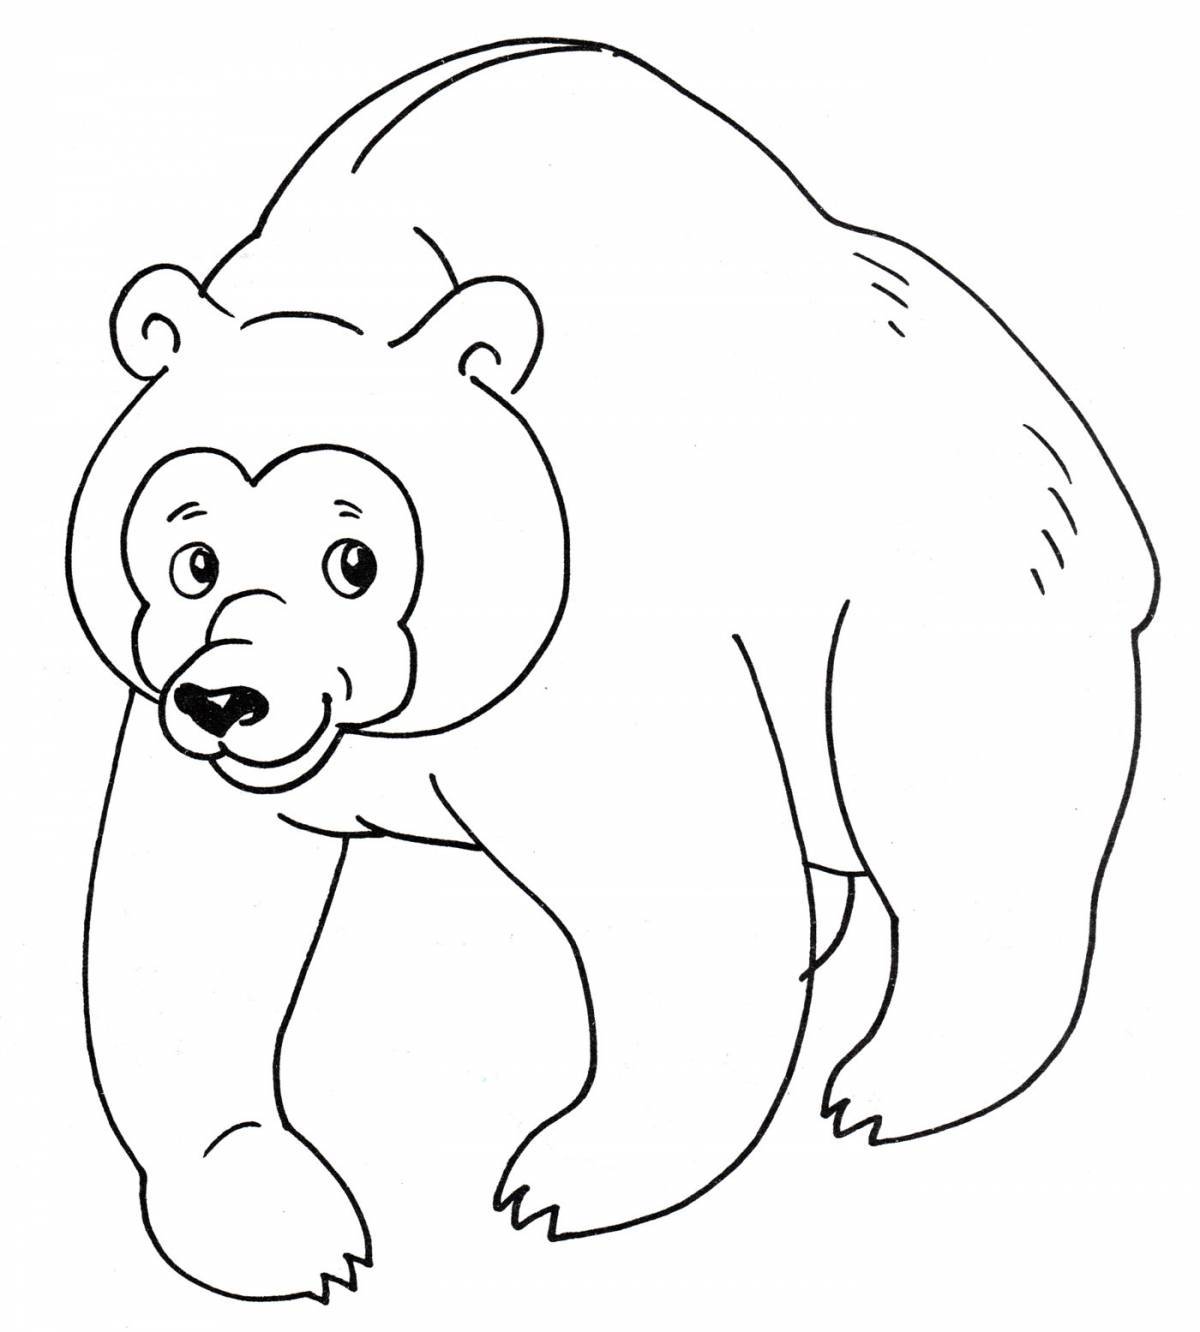 Раскраска авантюрный медведь для детей